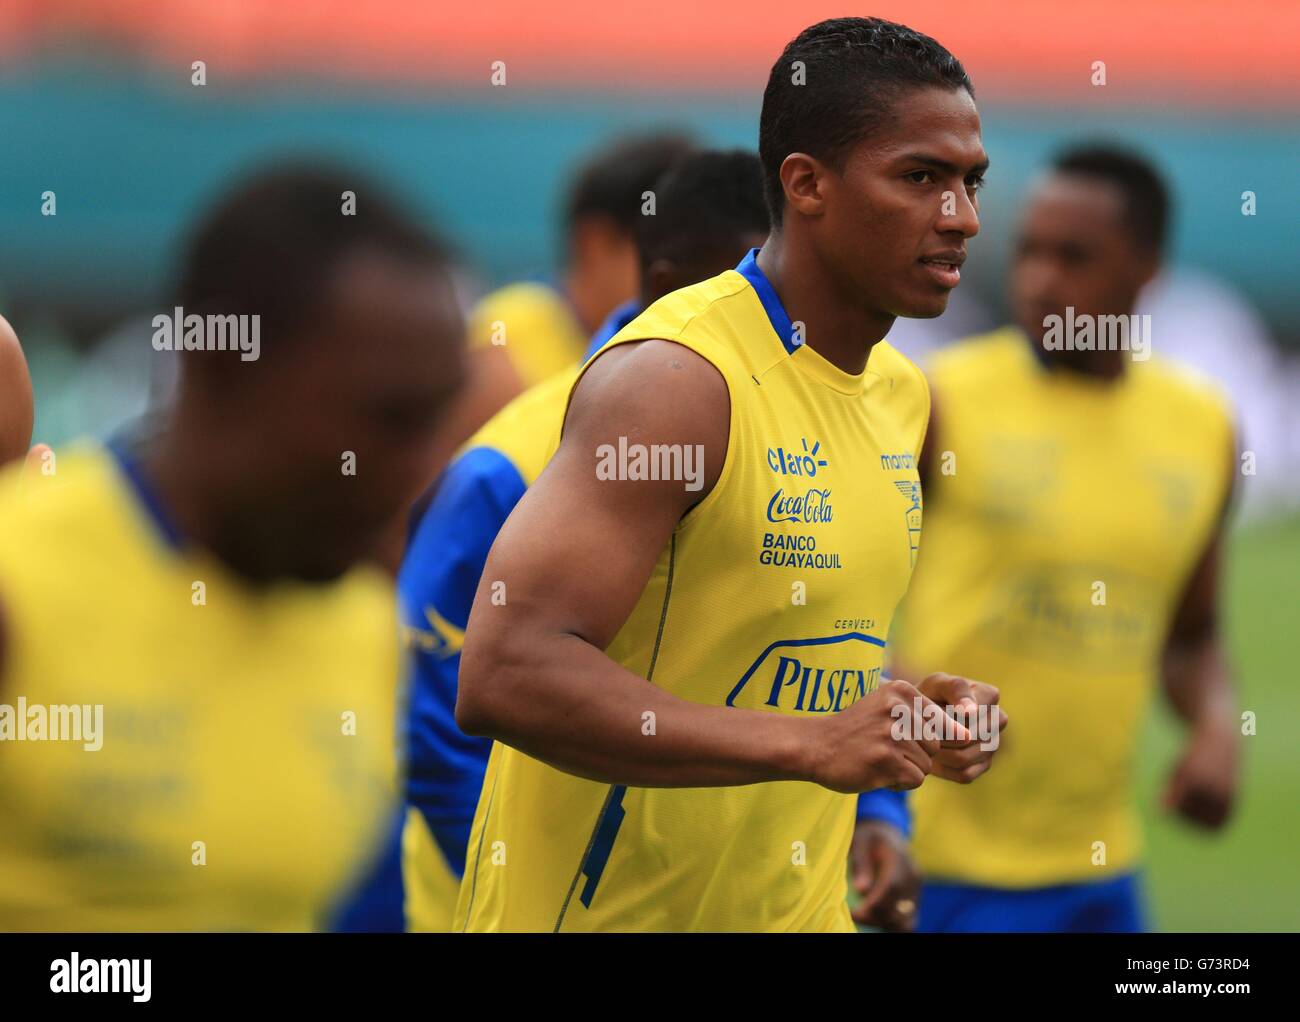 Soccer - World Cup 2014 - Miami Training Camp - England v Ecuador - Ecuador Training Session - Sun Life Stadium Stock Photo